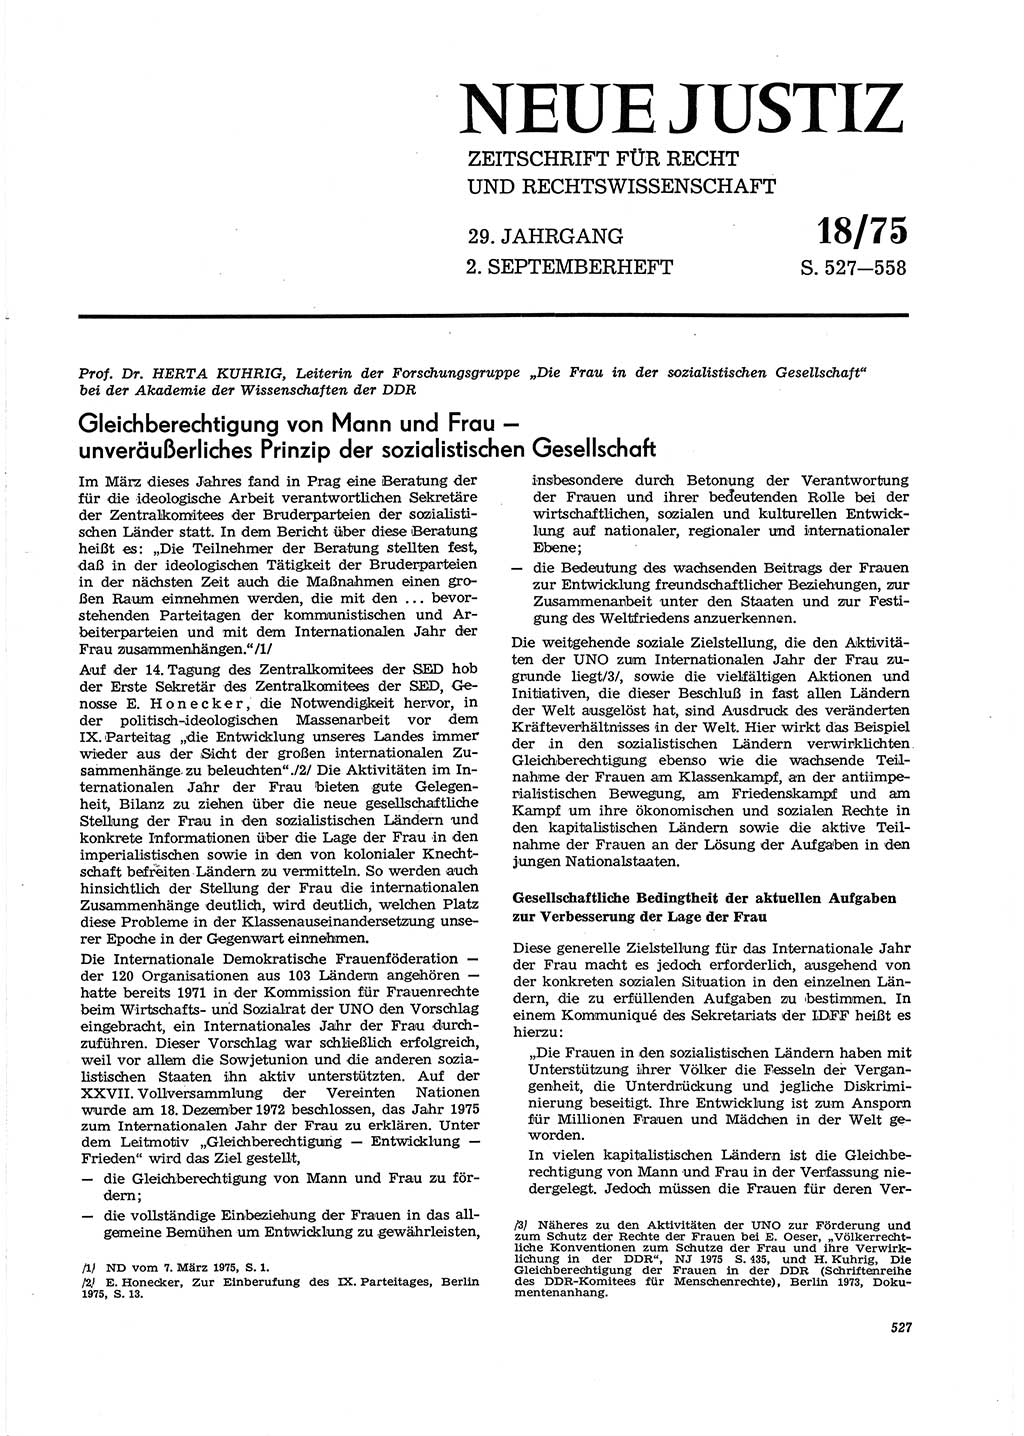 Neue Justiz (NJ), Zeitschrift für Recht und Rechtswissenschaft [Deutsche Demokratische Republik (DDR)], 29. Jahrgang 1975, Seite 527 (NJ DDR 1975, S. 527)